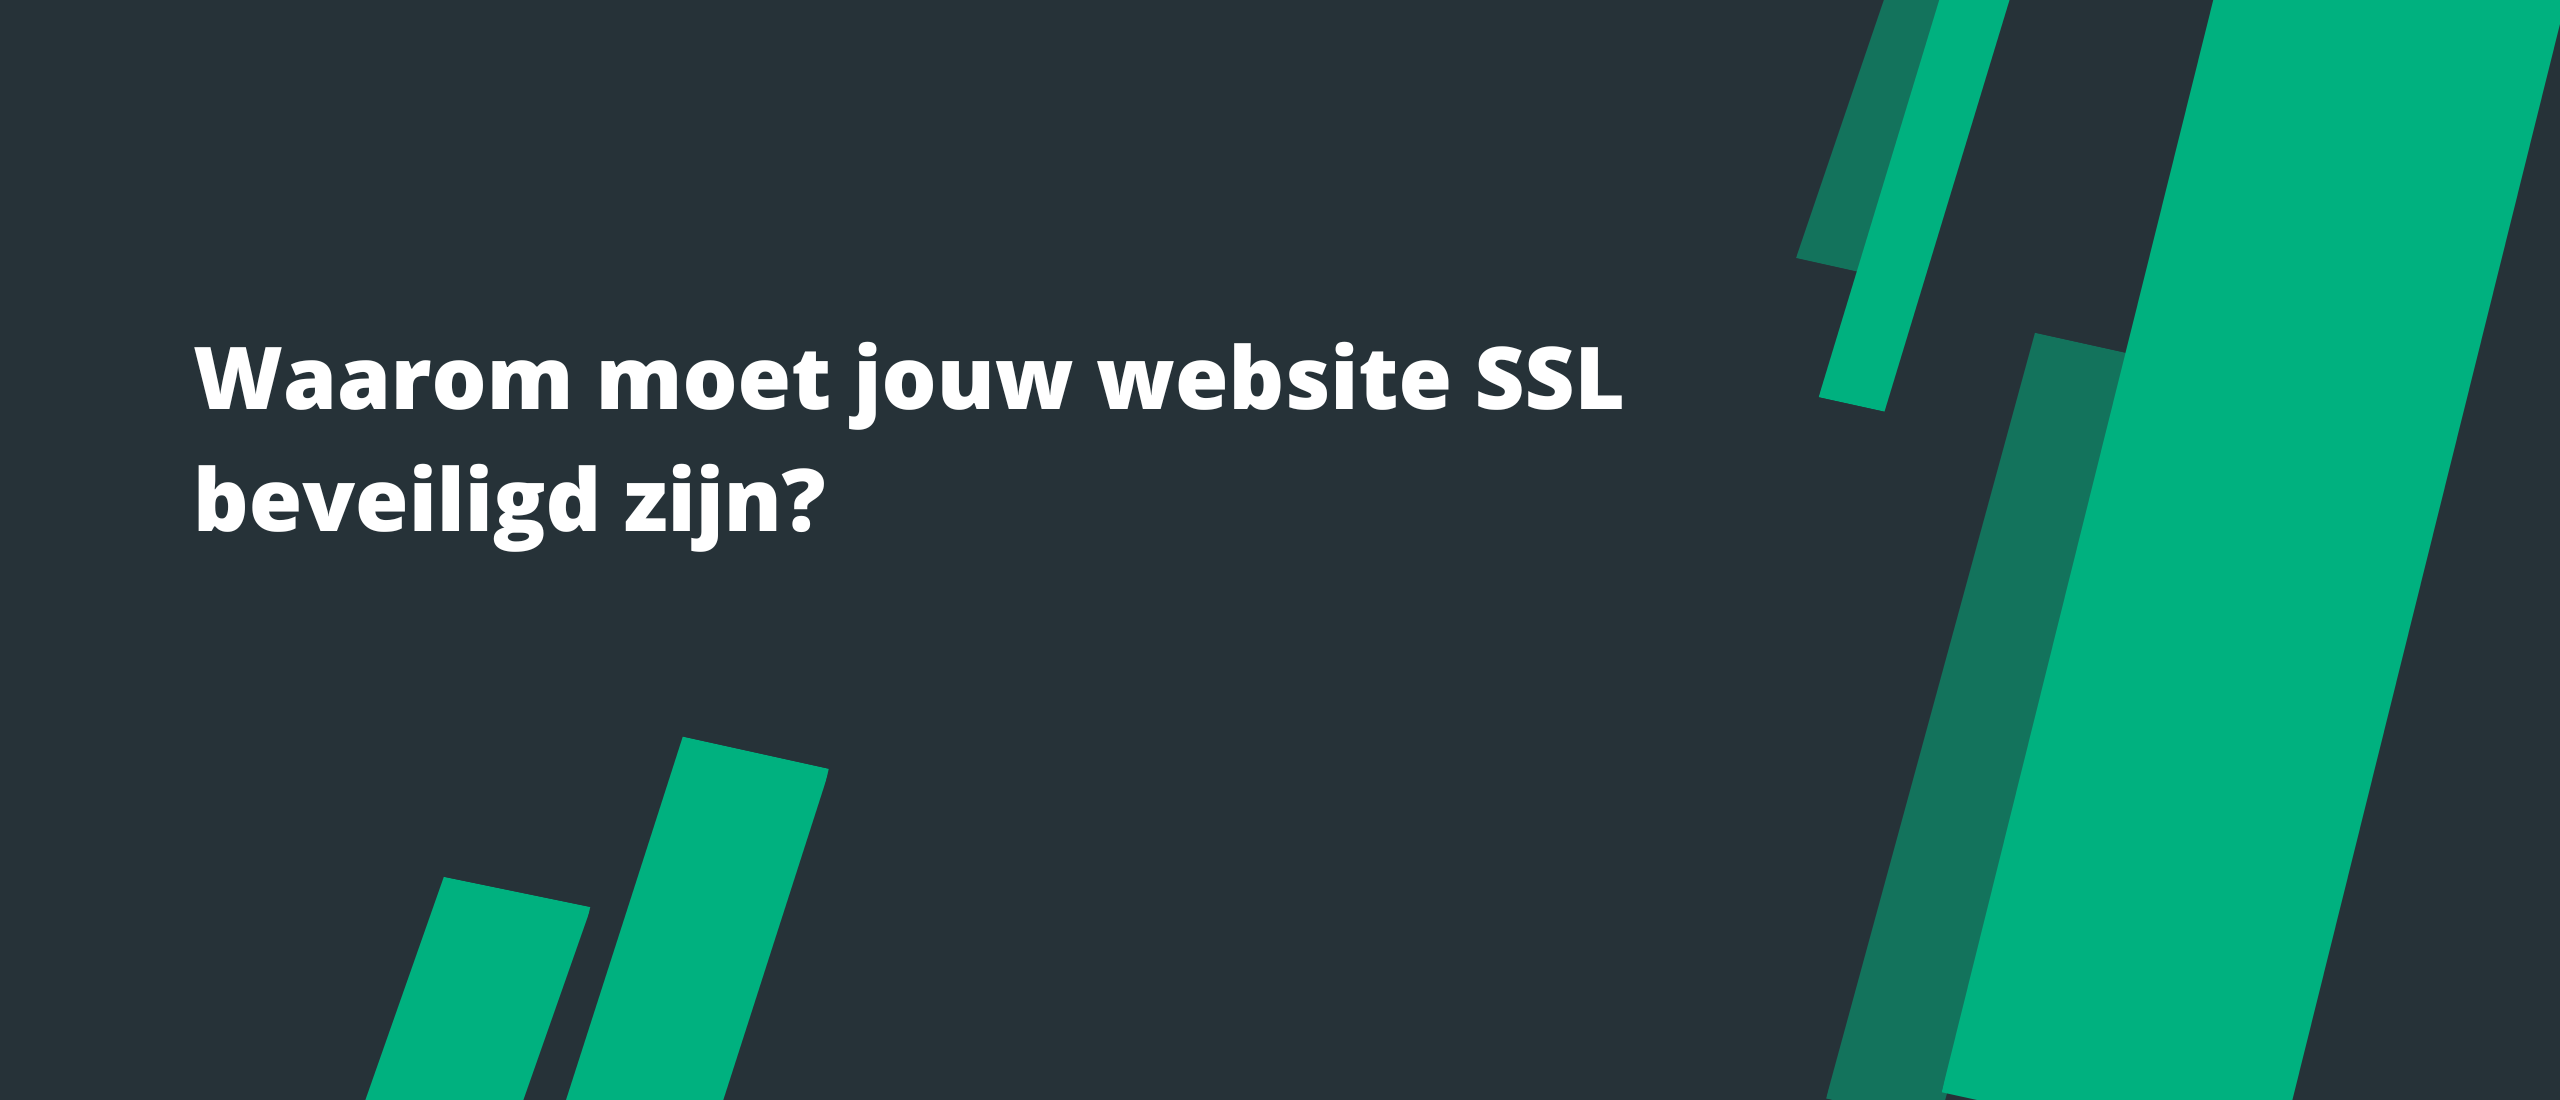 Waarom moet jouw website SSL beveiligd zijn?